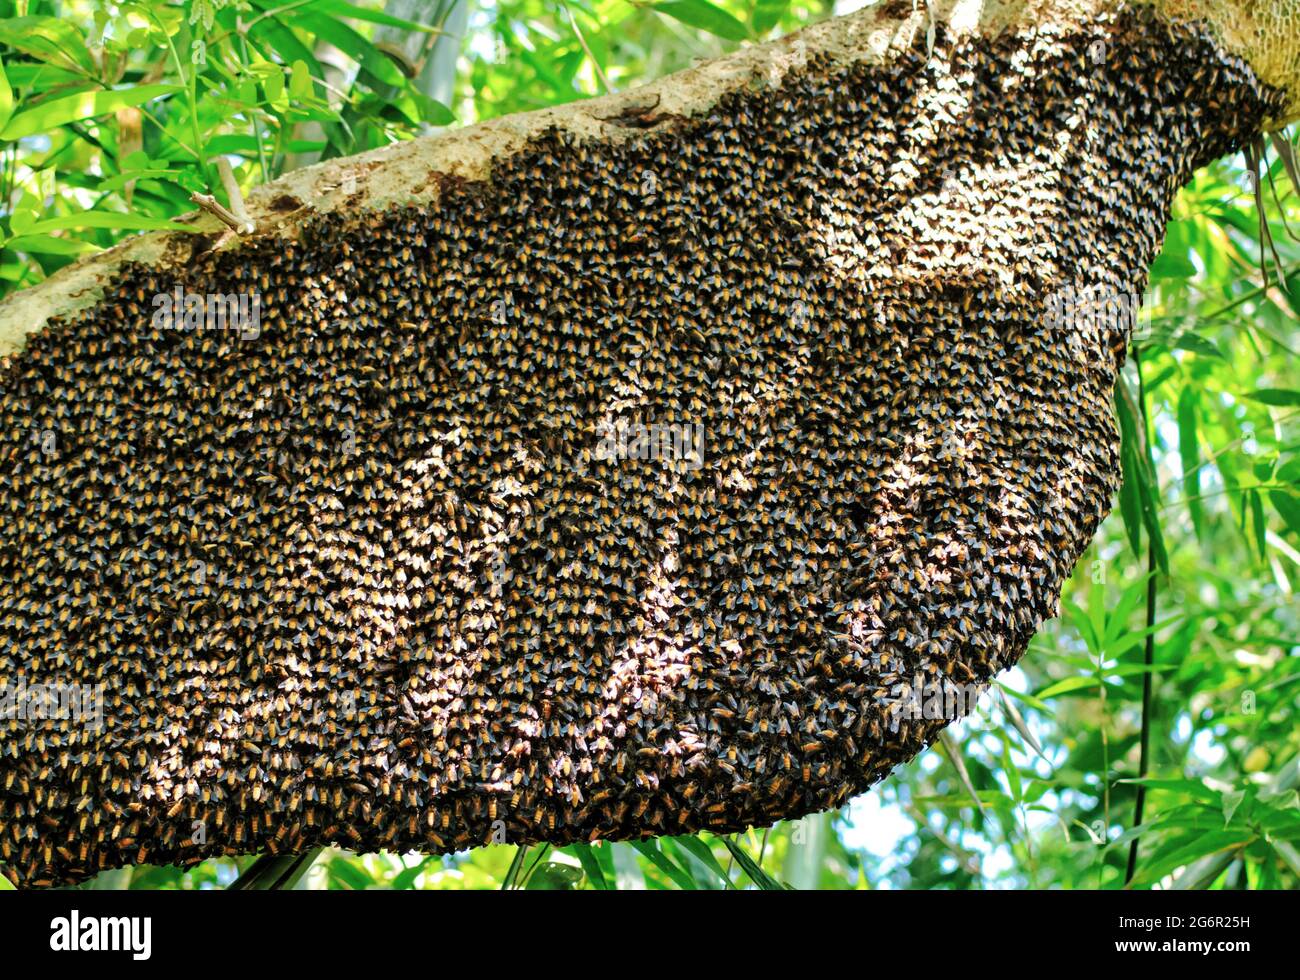 Ein einziger großer riesiger Honigbienenkamm hängt unter Baumzweigen, die teilweise von Arbeitsbienen bedeckt sind. Honigbienen-Schwarm, der in der Natur am Baum hängt. Stockfoto